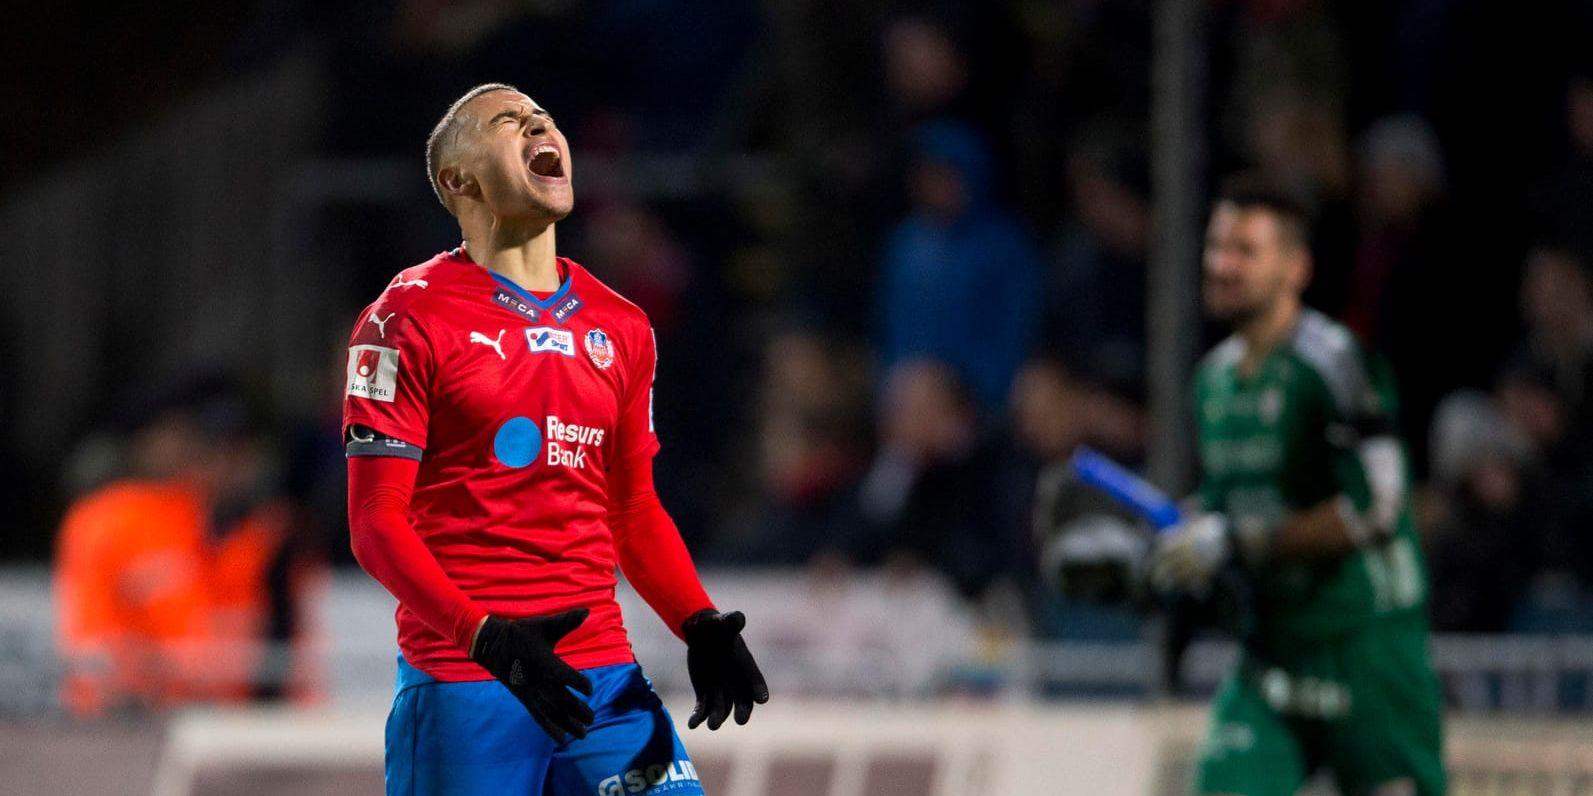 2016 åkte Jordan Larsson ur allsvenskan med Helsingborg. Nu är han tillbaka i svensk fotboll för spel med IFK Norrköping.